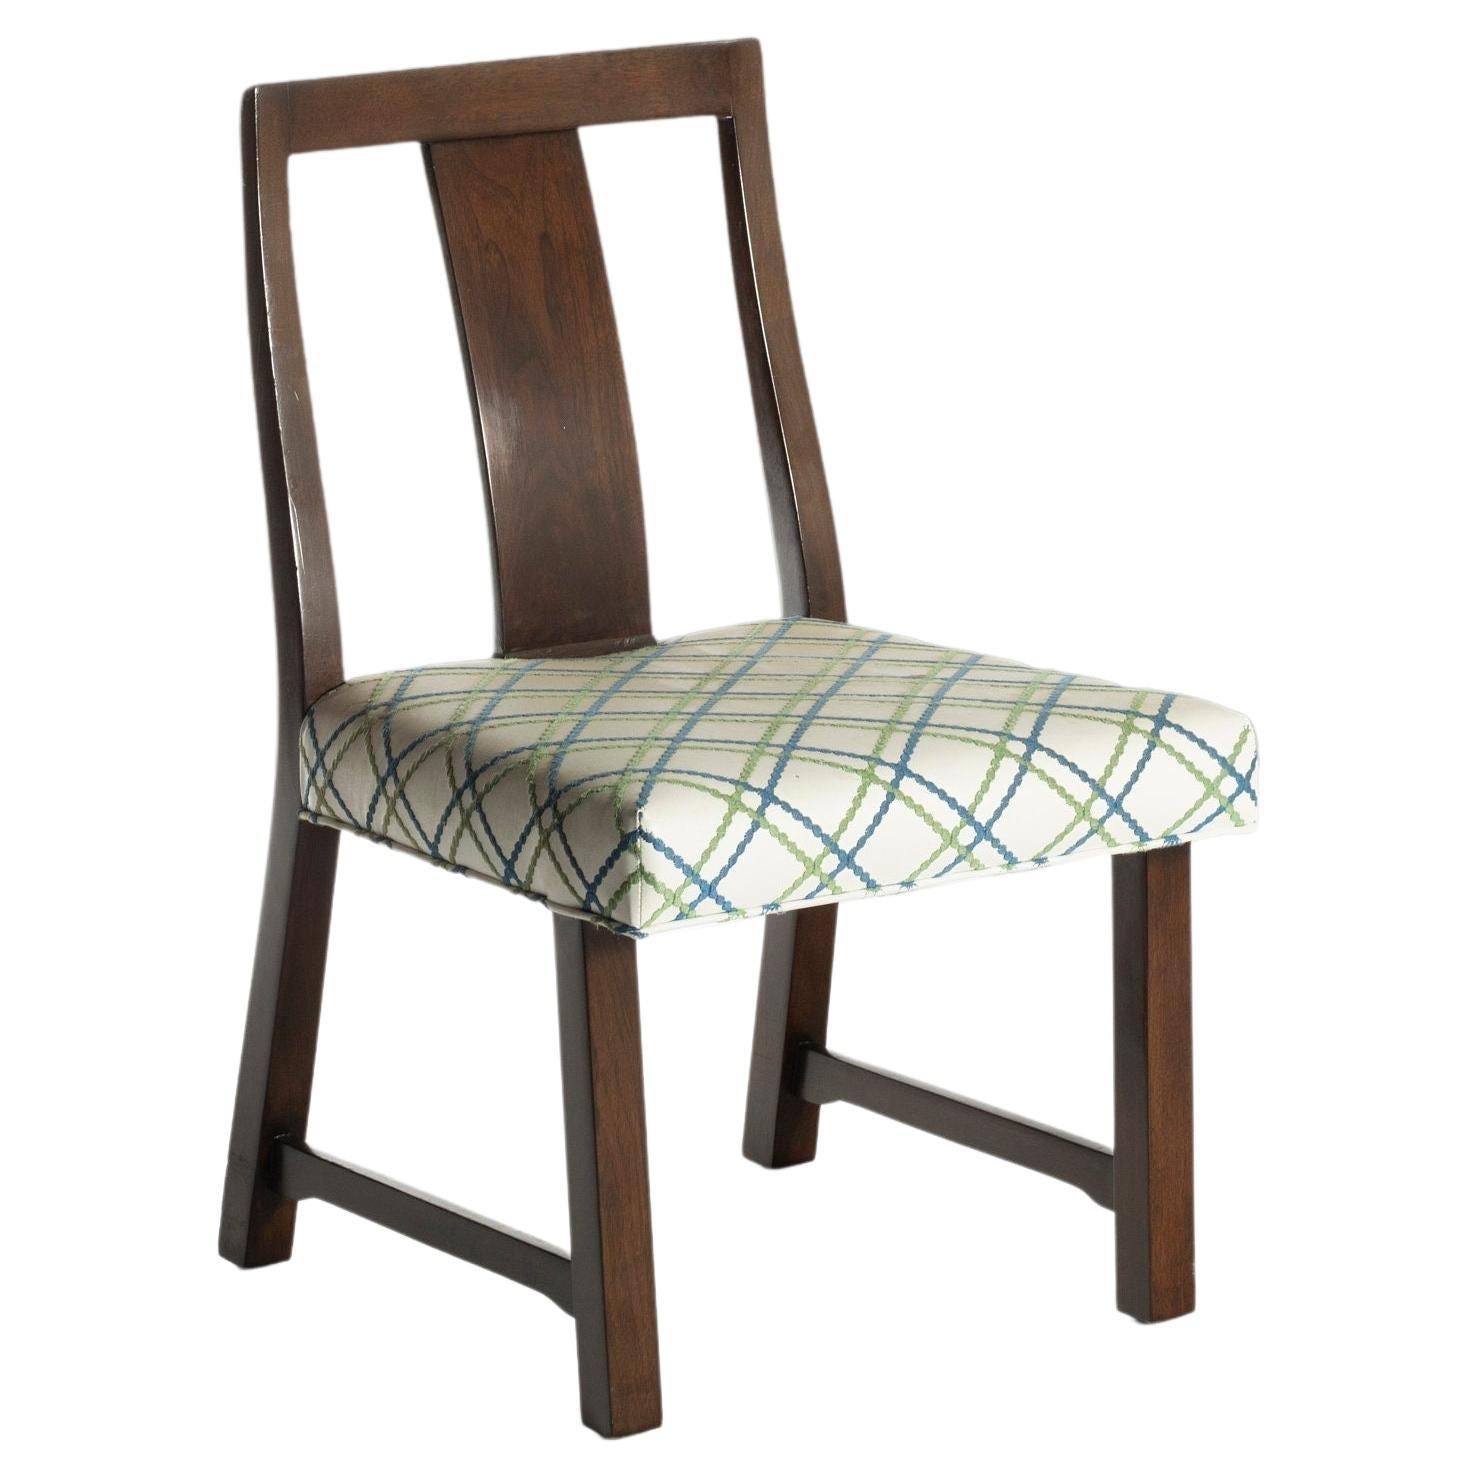 Dunbar Model No. 294W Desk Chair / Dining Chair by Edward Wormley for Dunbar 